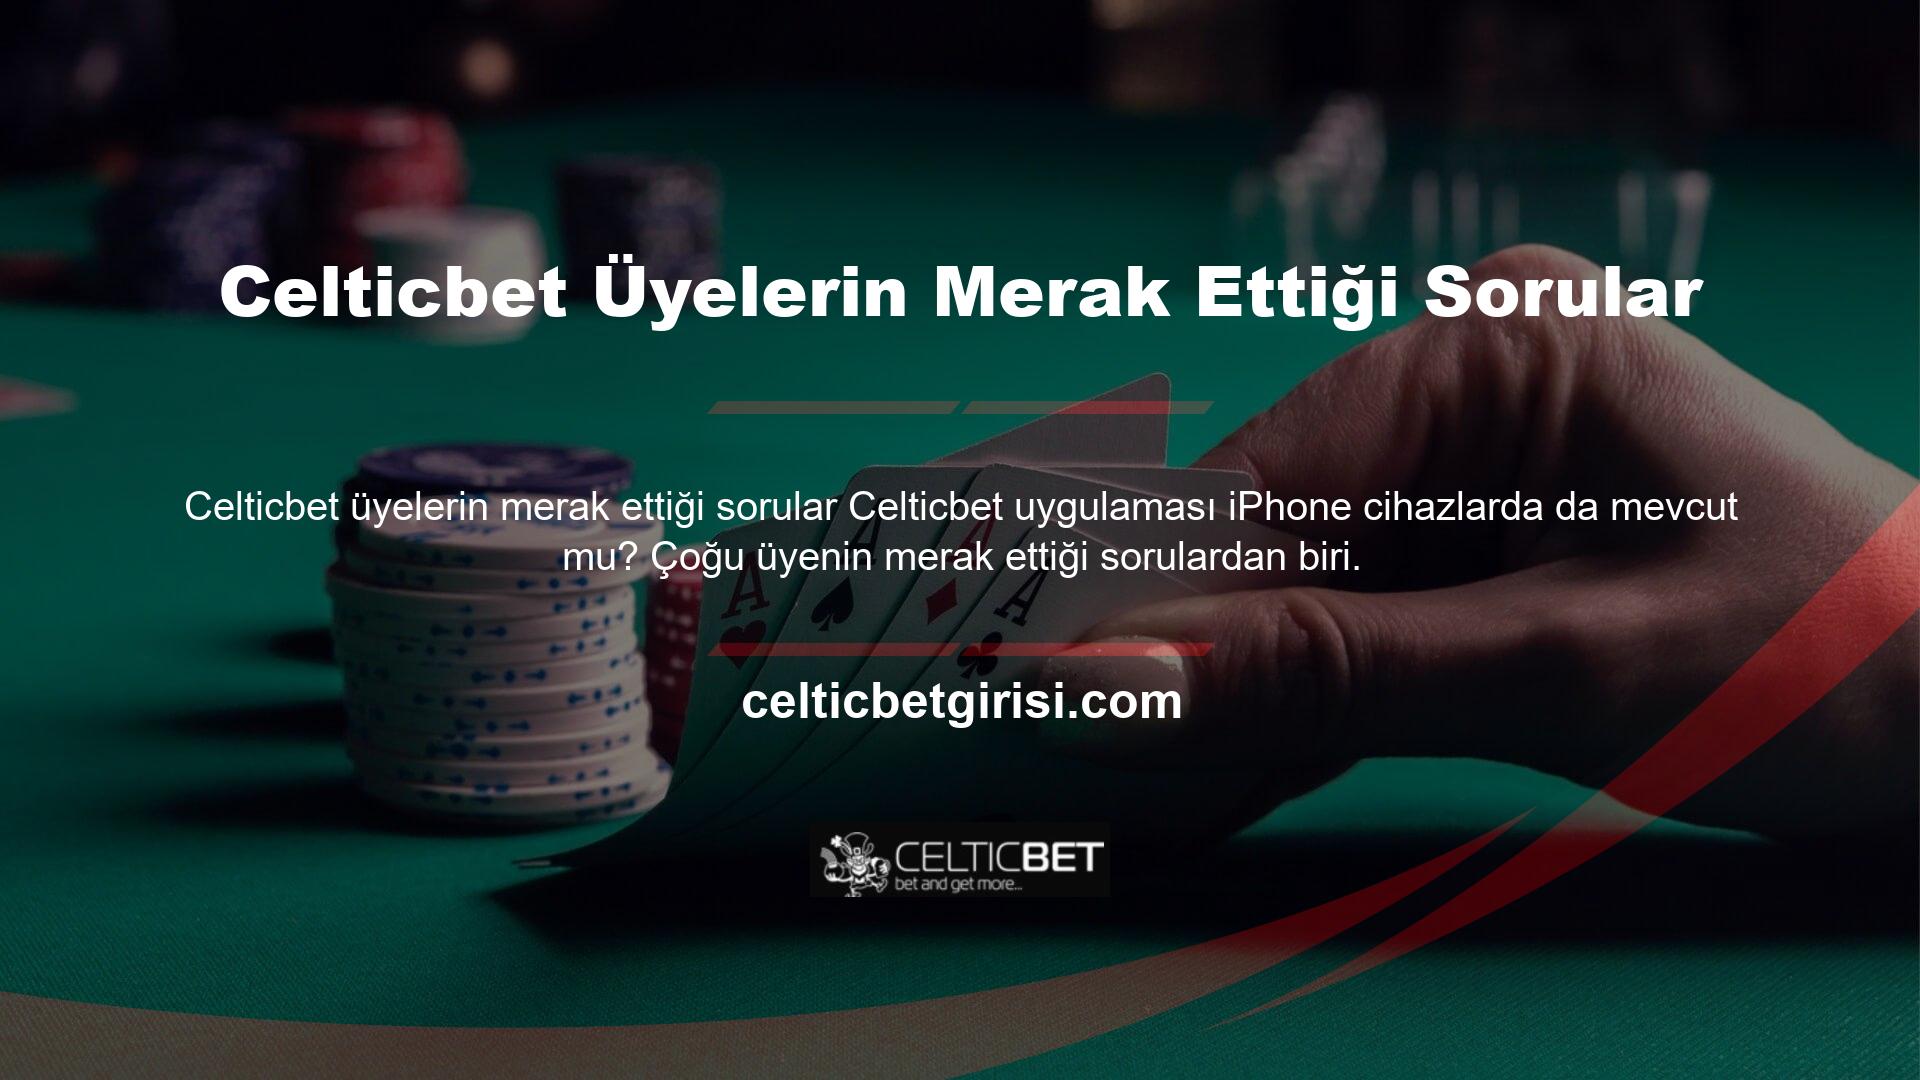 Celticbet mobil uygulaması uyumlu iOS cihazlarla çalışır mı? Üyelik başvurusunda bulunan bazı kişiler, her firmanın sunduğu hizmetlerde sorun yaşama endişesi yaşayabilir